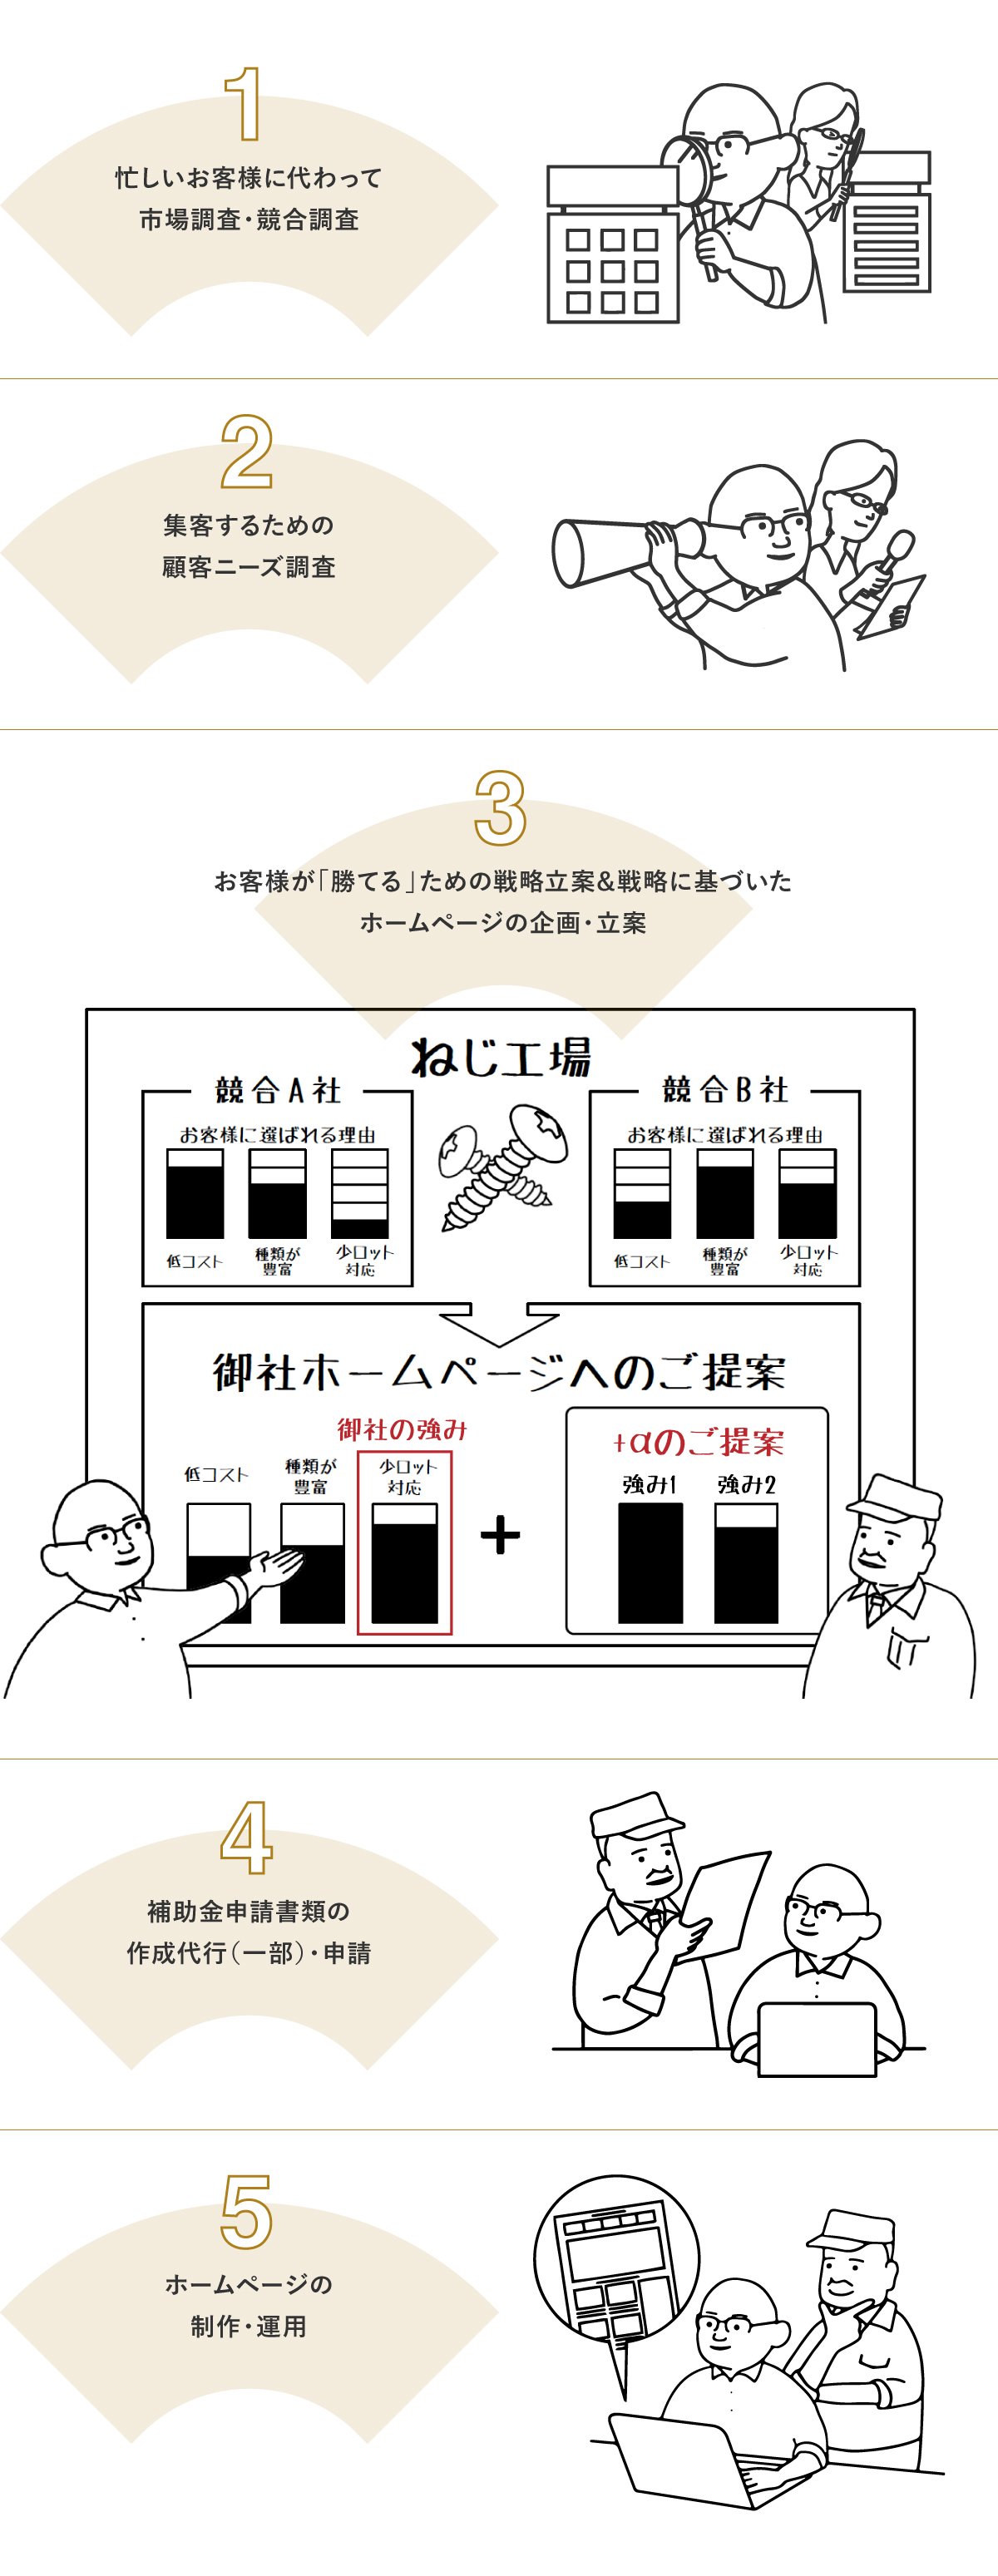 Soichiroが製造業のみなさまのためにできることの図